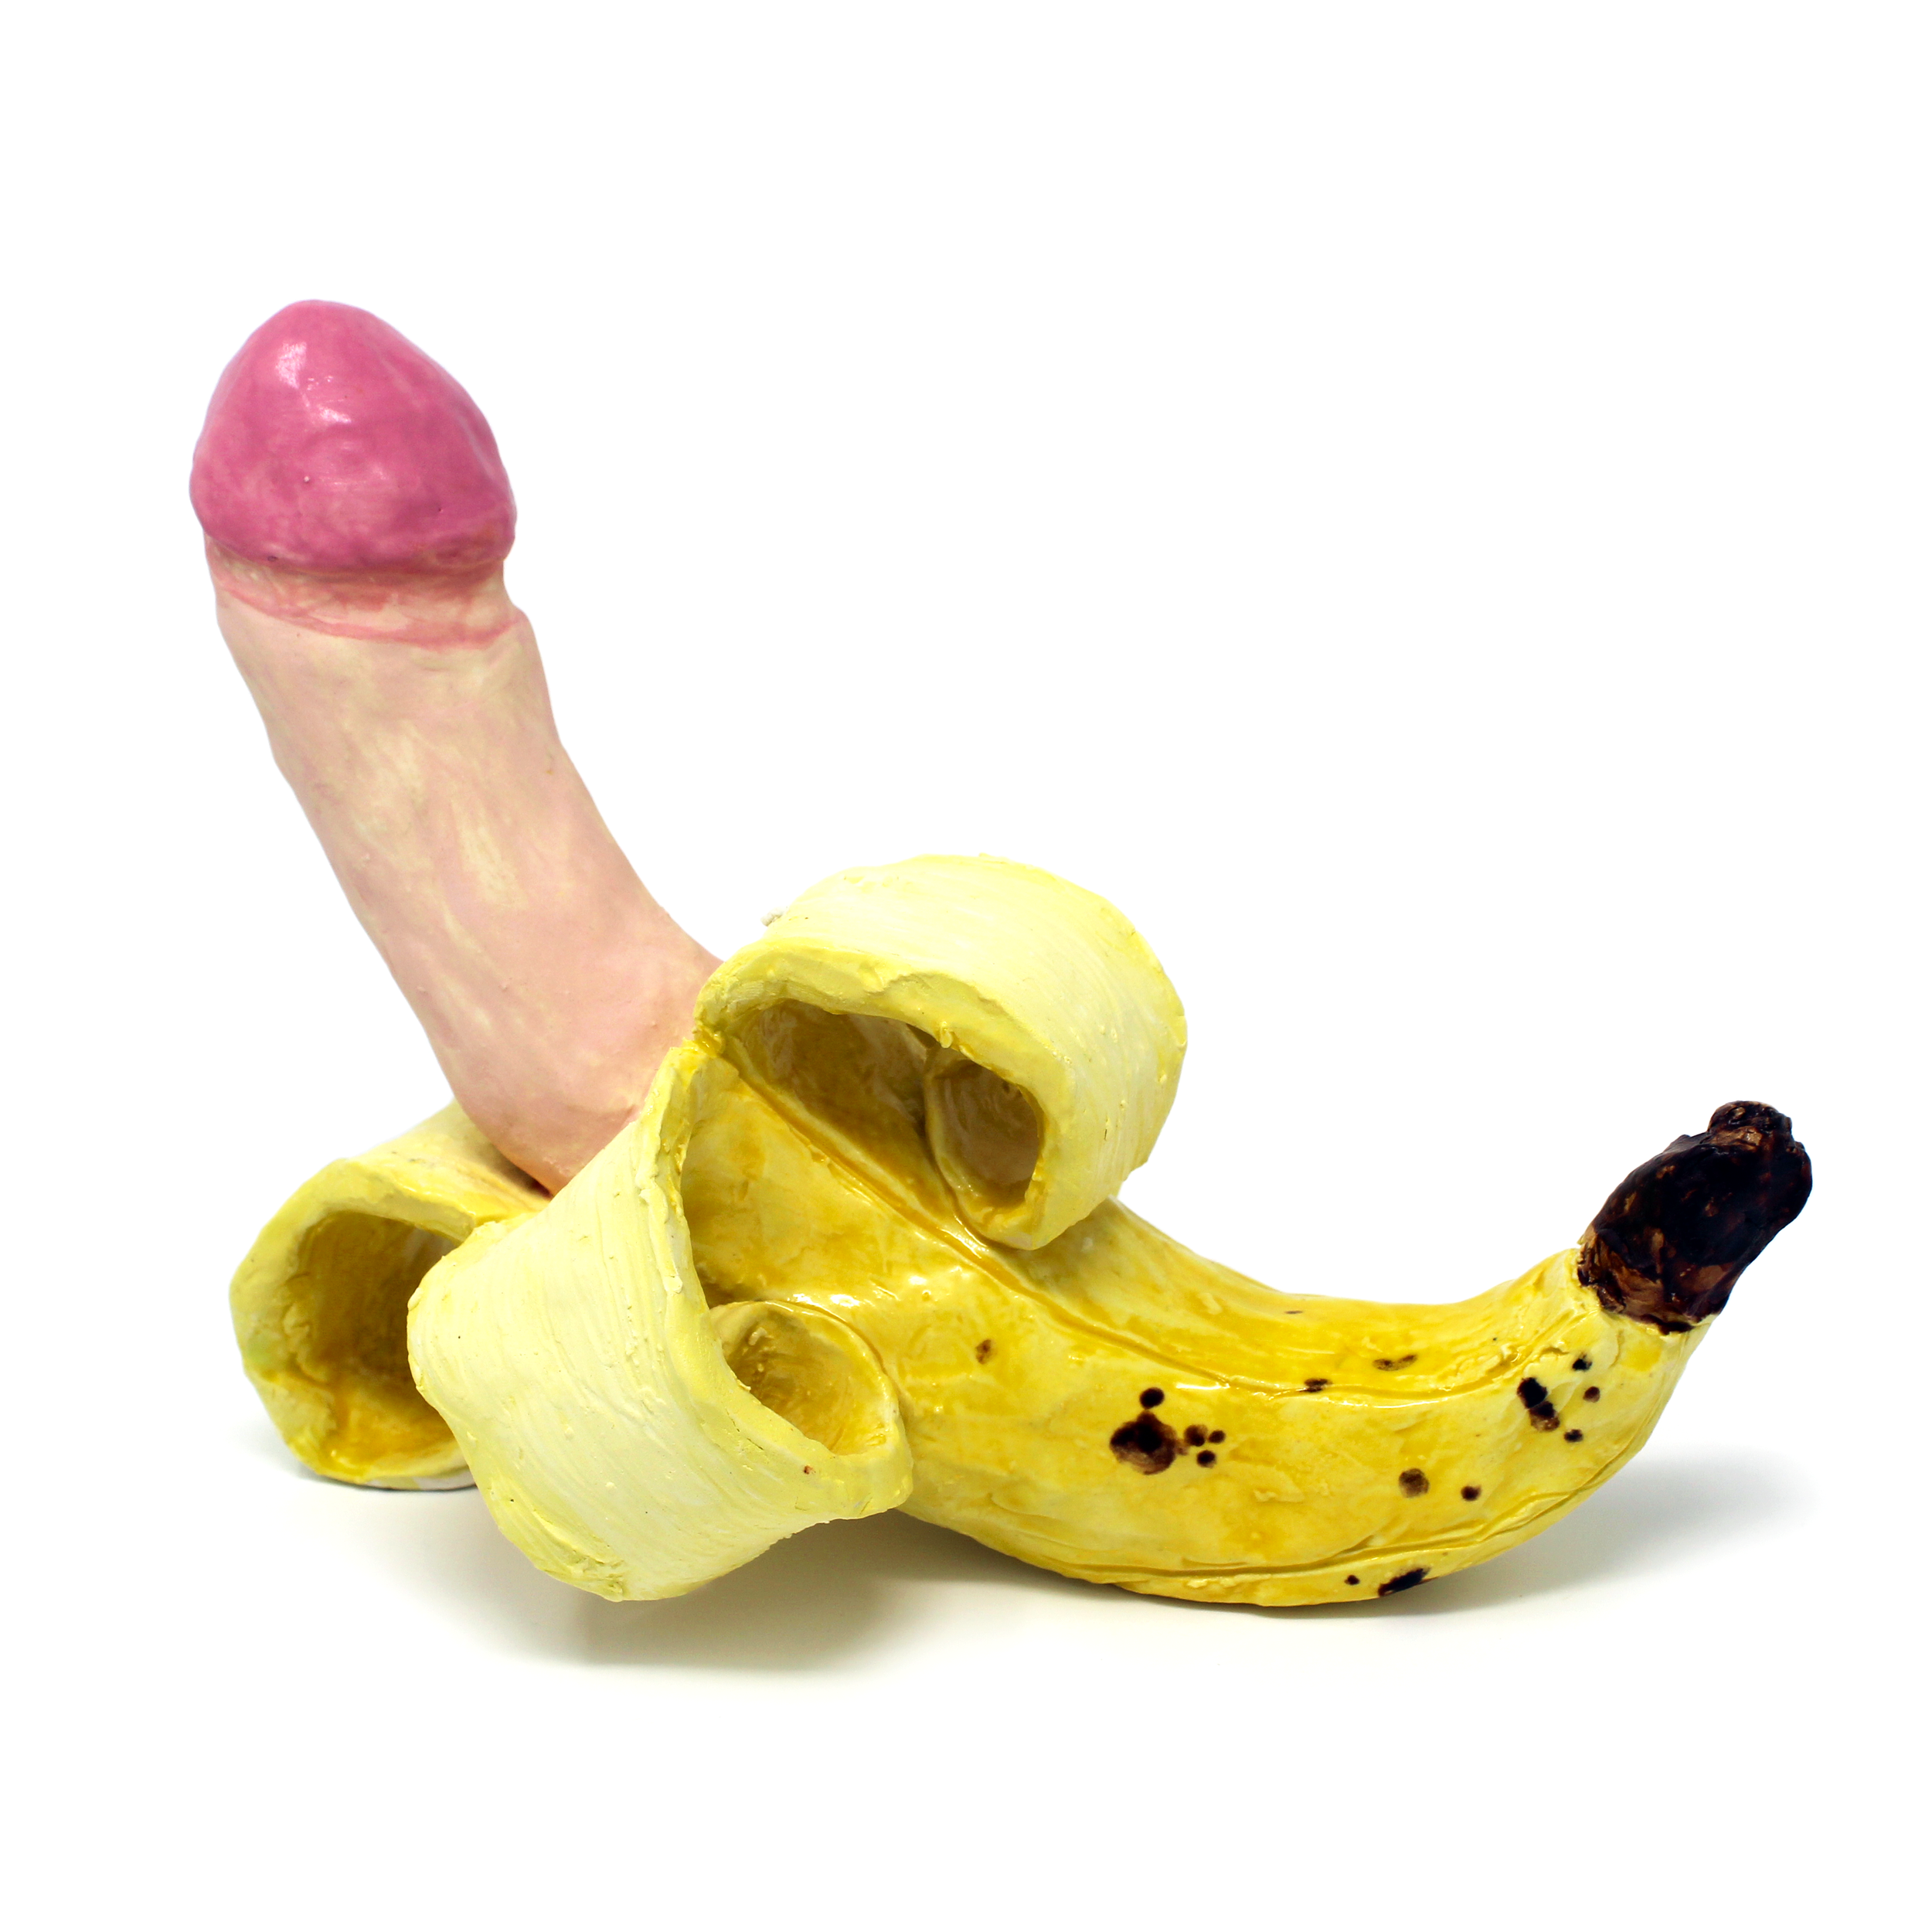 Uncut (banana dick)